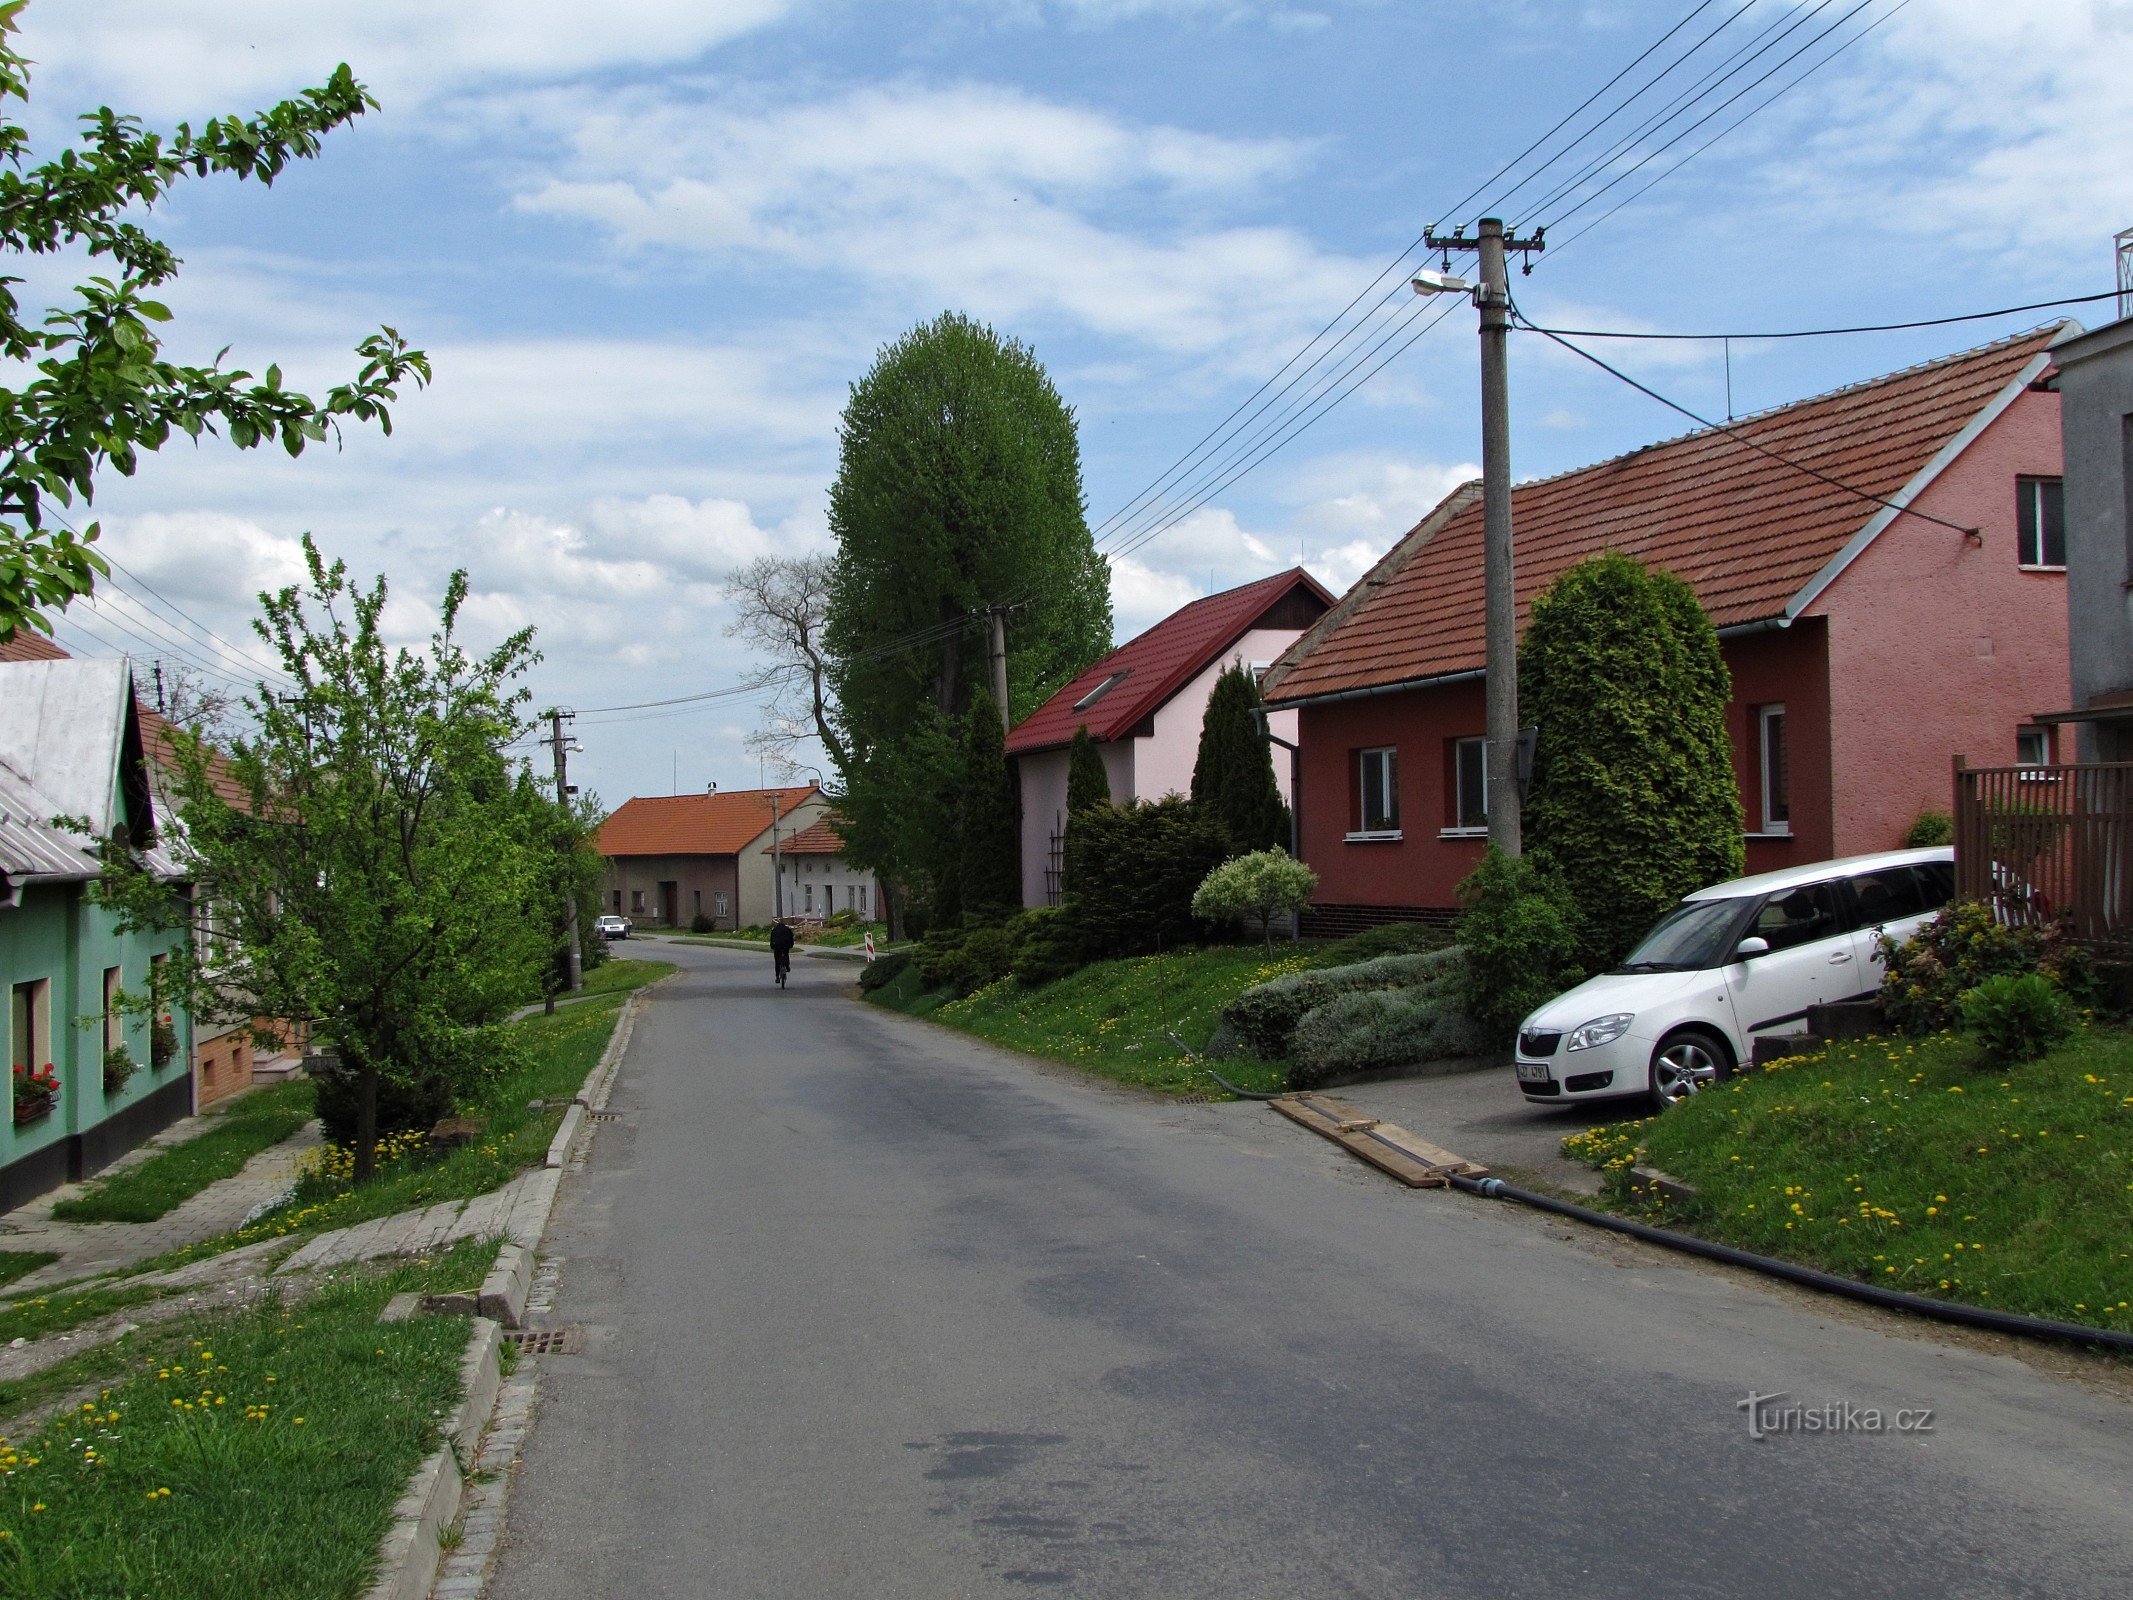 Nová Dědina - noget om landsbyen